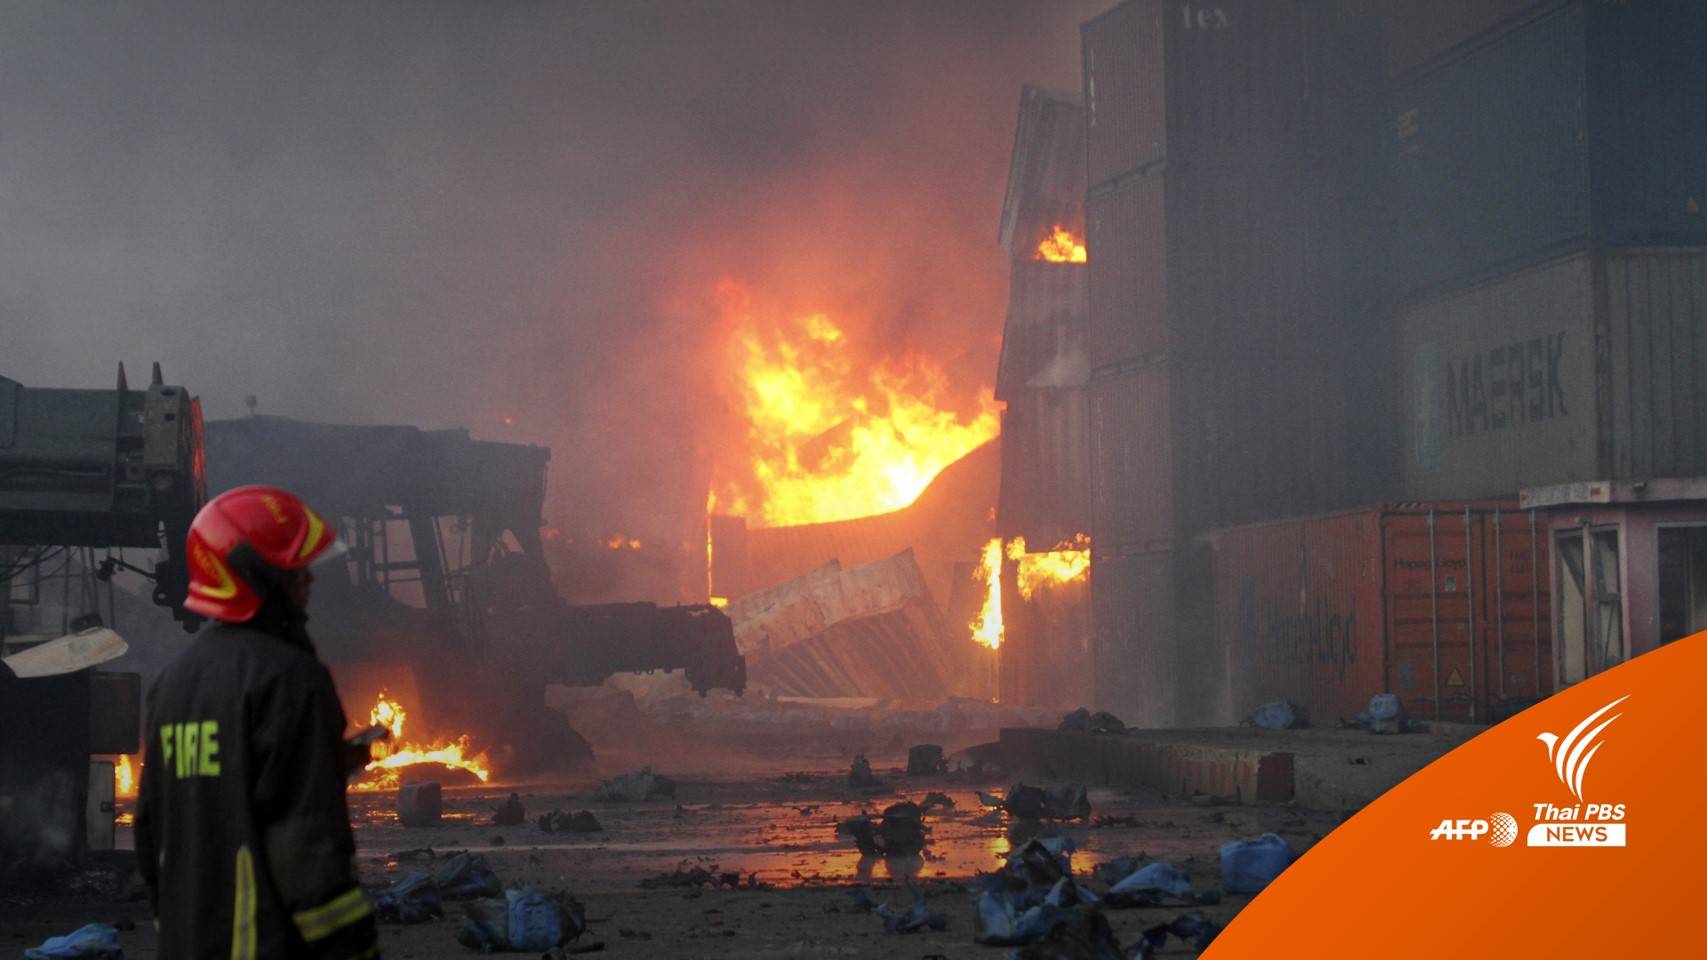 ไฟไหม้คลังสินค้าในบังกลาเทศ เสียชีวิต 38 บาดเจ็บกว่า 300 คน